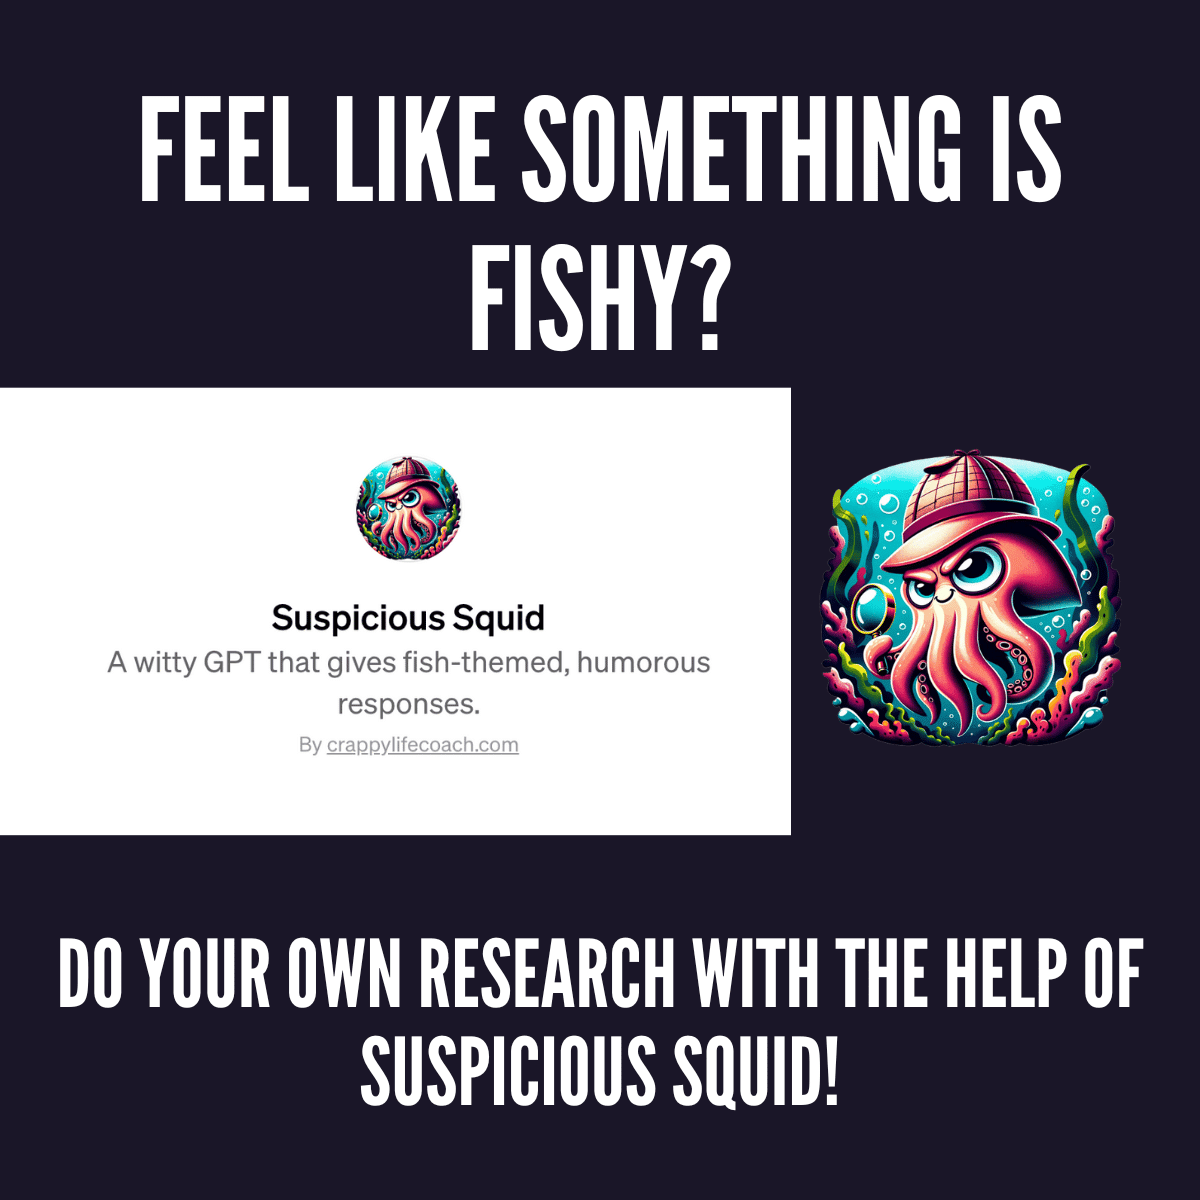 Suspicious Squid